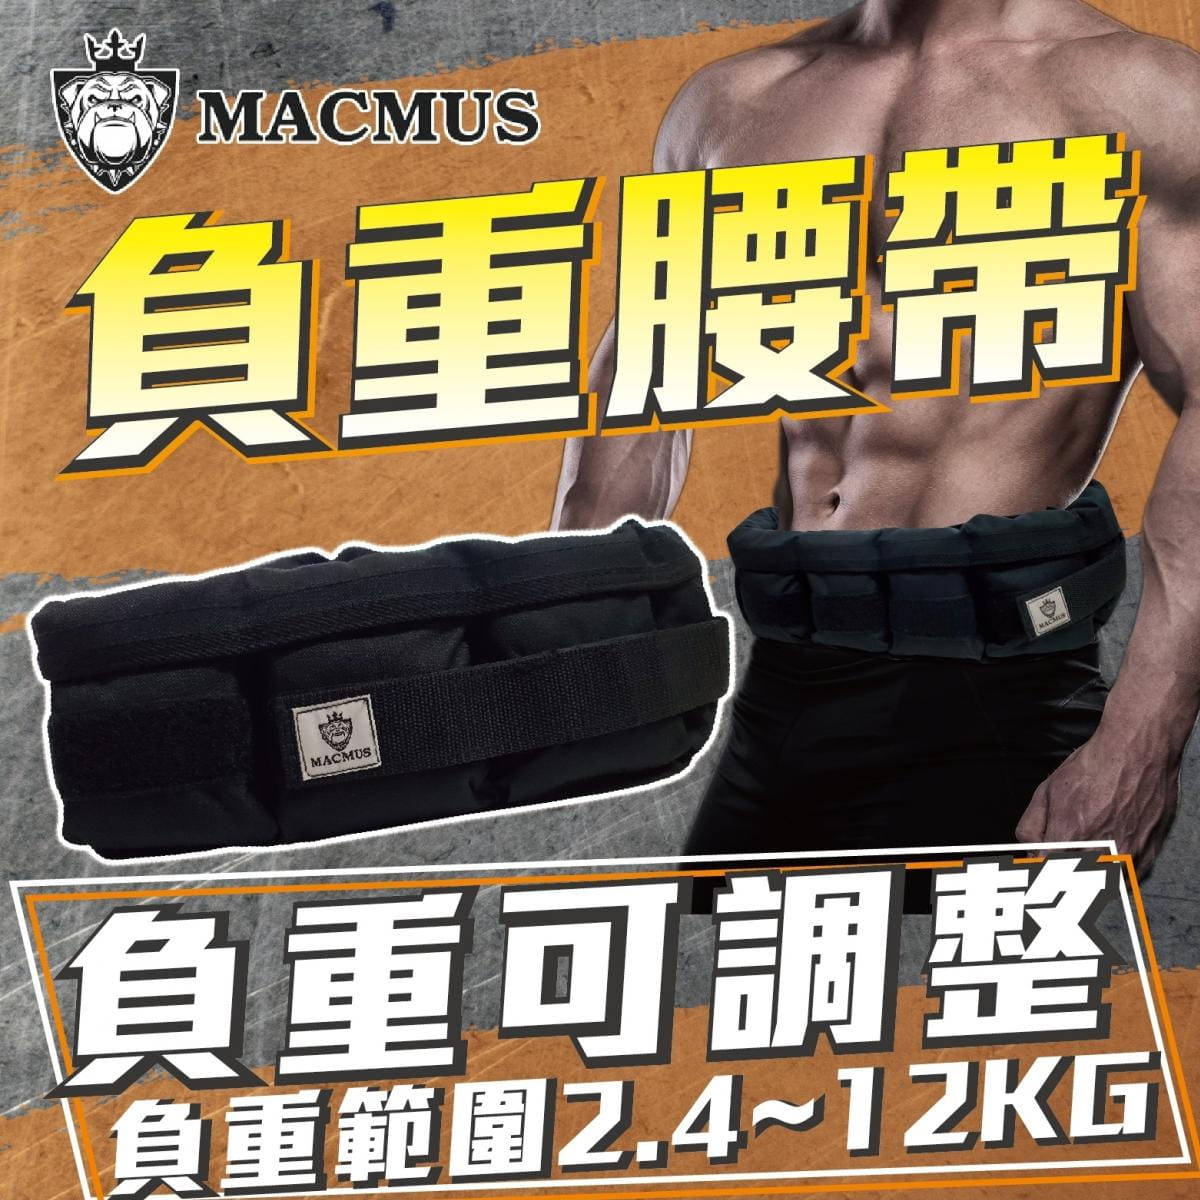 【MACMUS】6.4公斤負重腰帶｜8格式可調整重訓腰帶｜強化核心肌群鍛鍊腰部肌肉 0